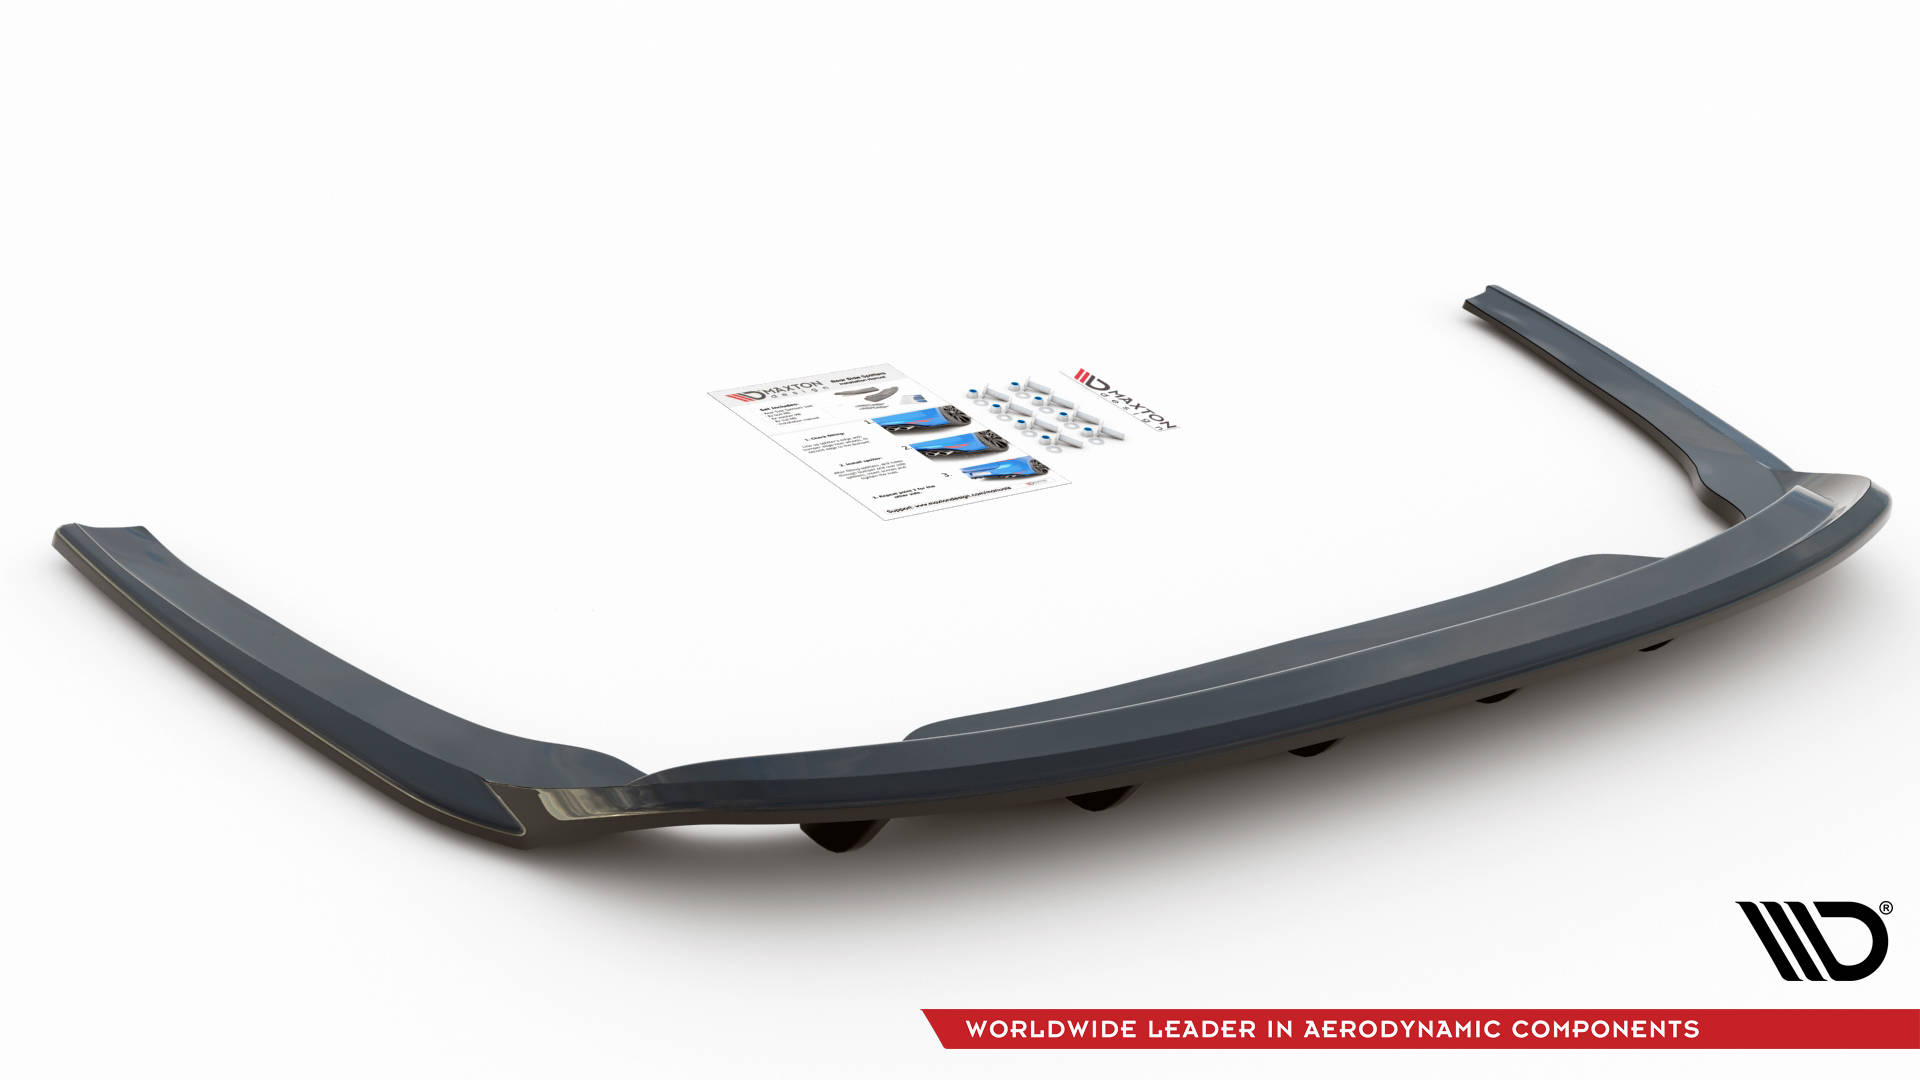 Maxton Design Mittlerer Diffusor Heck Ansatz DTM Look für Skoda Octavia Mk4 schwarz Hochglanz